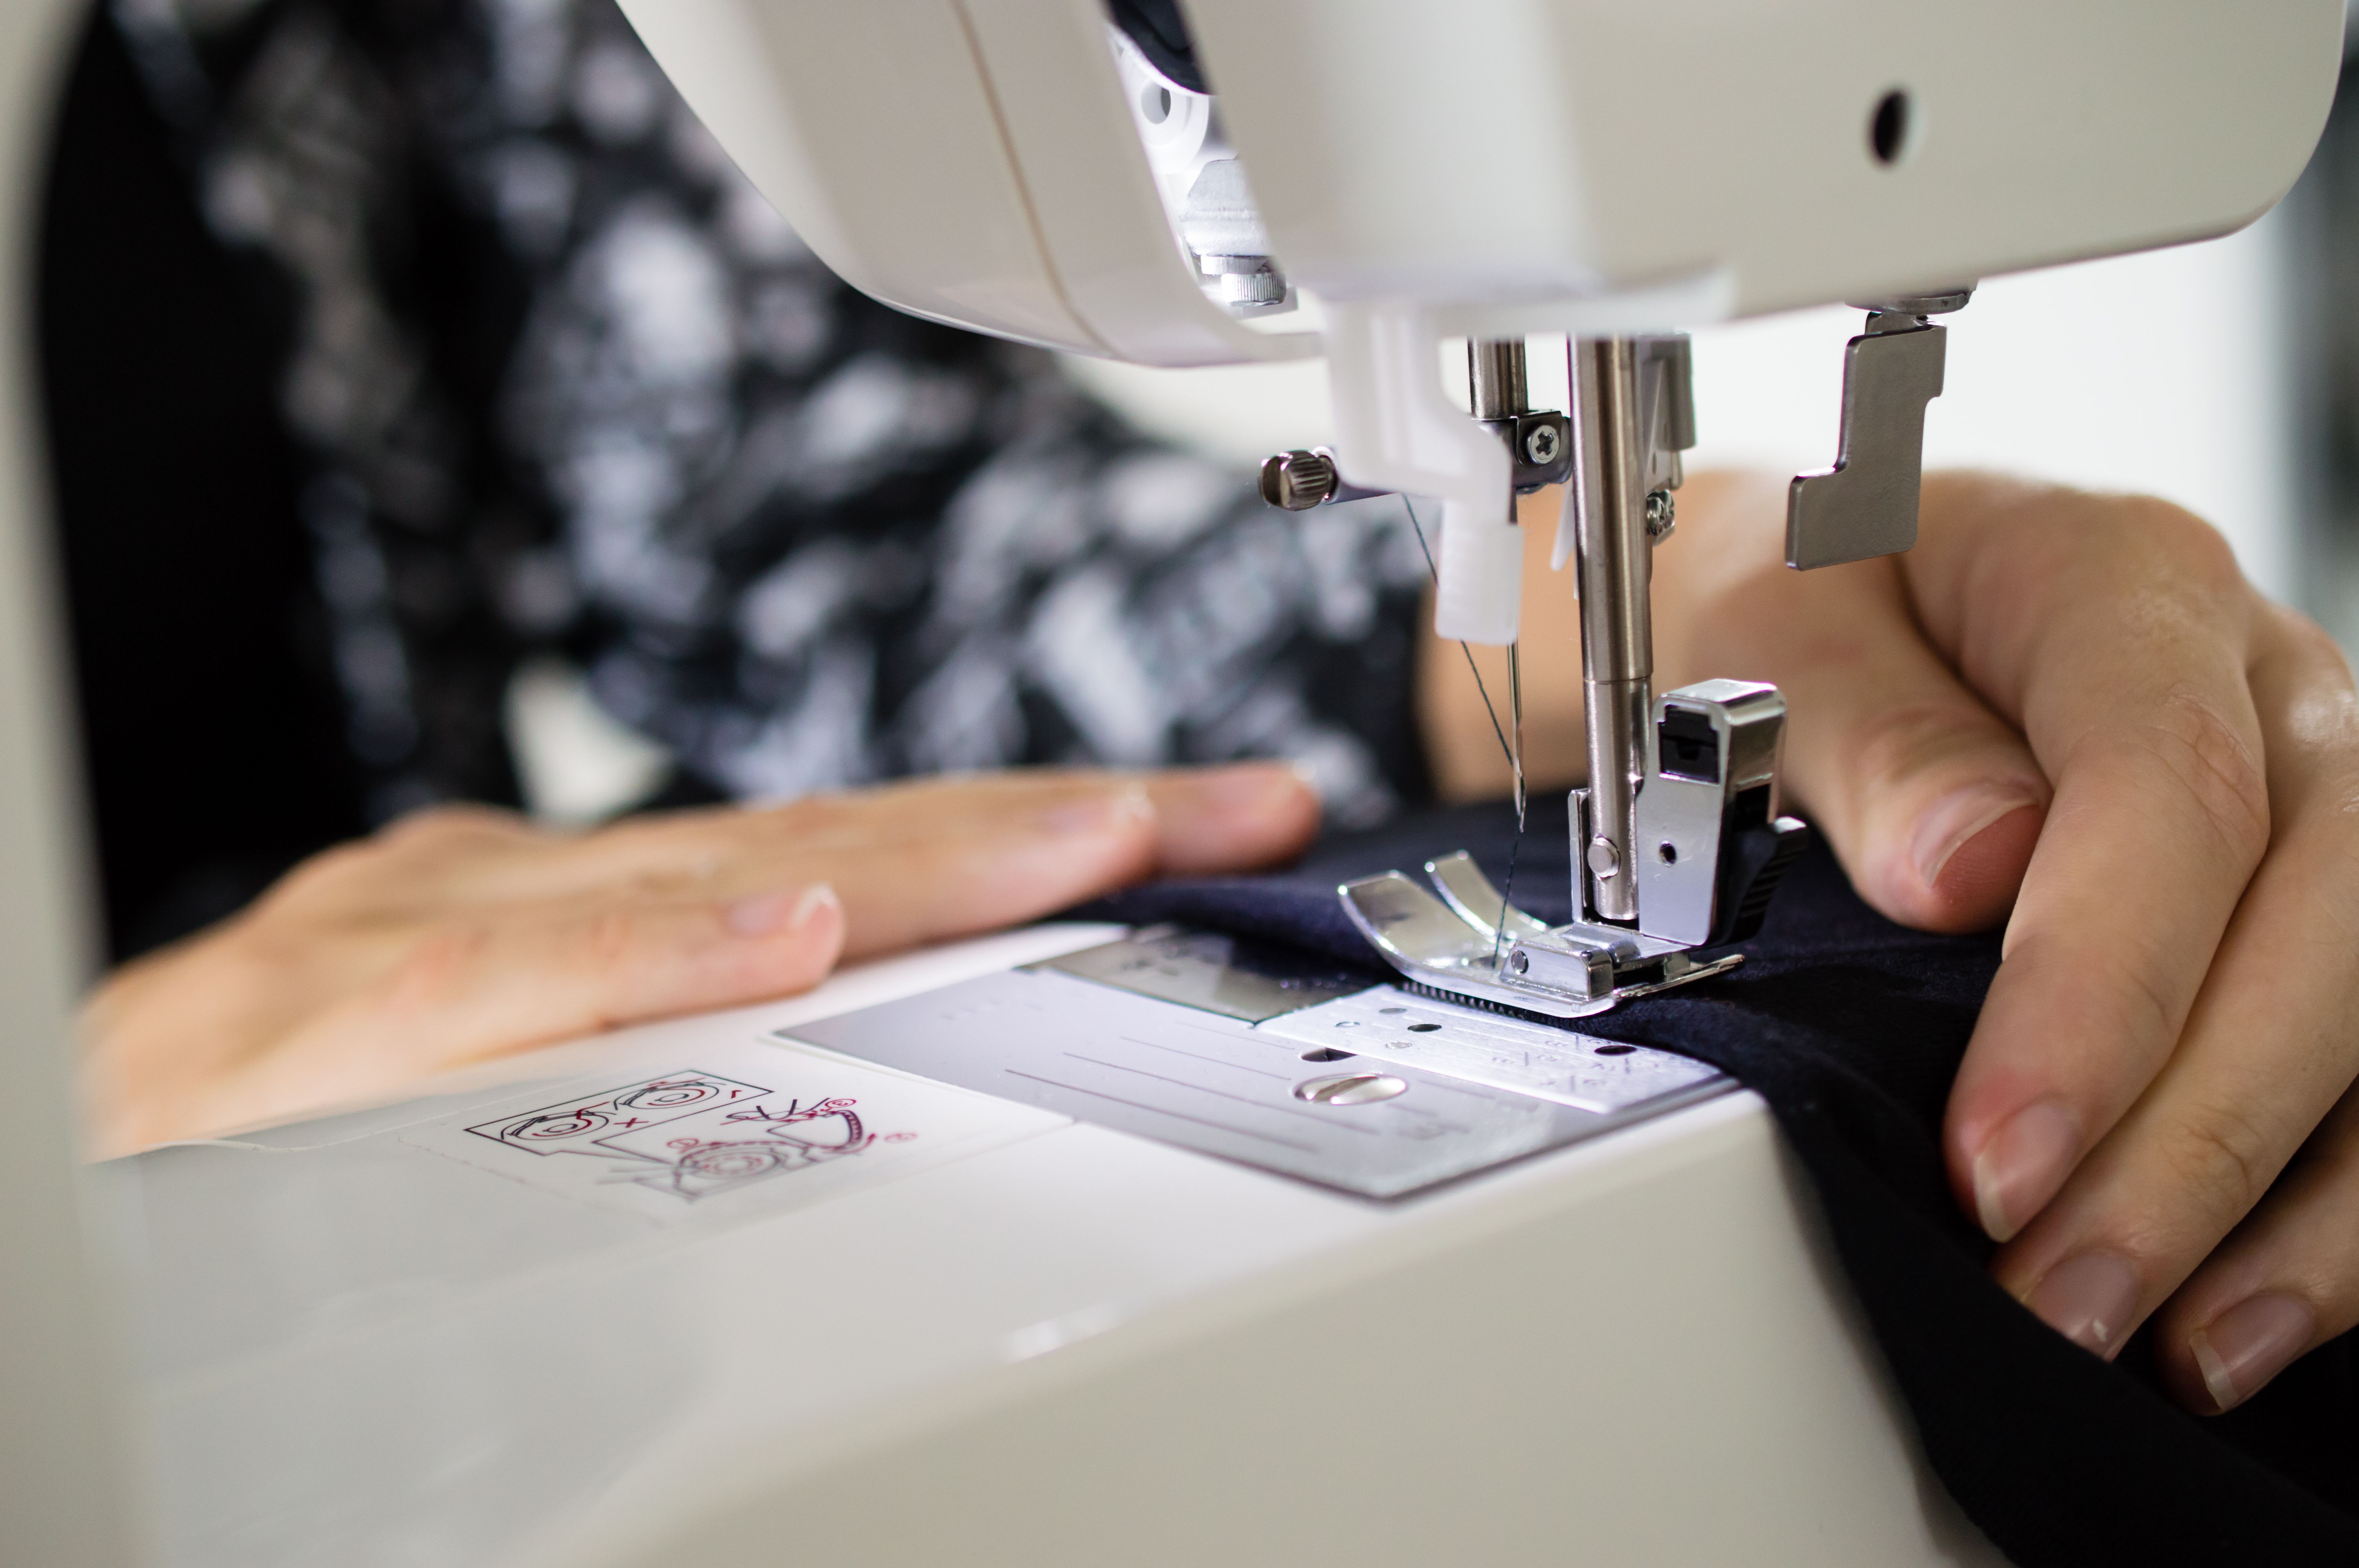 Reparación de máquinas de coser en Talavera de la Reina